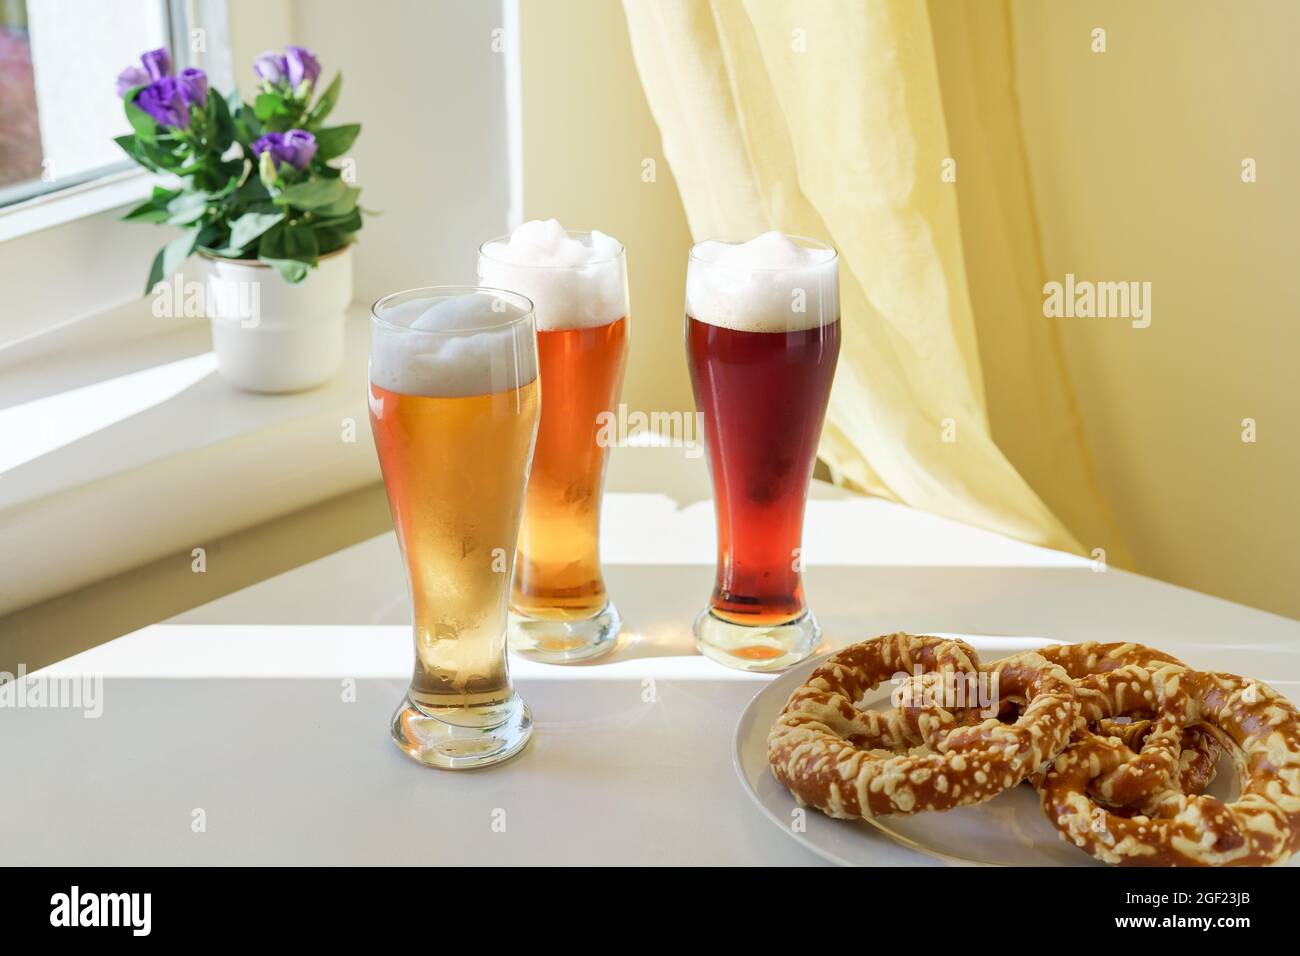 Drei Gläser mit verschiedenen Biersorten auf dem Tisch Stockfoto